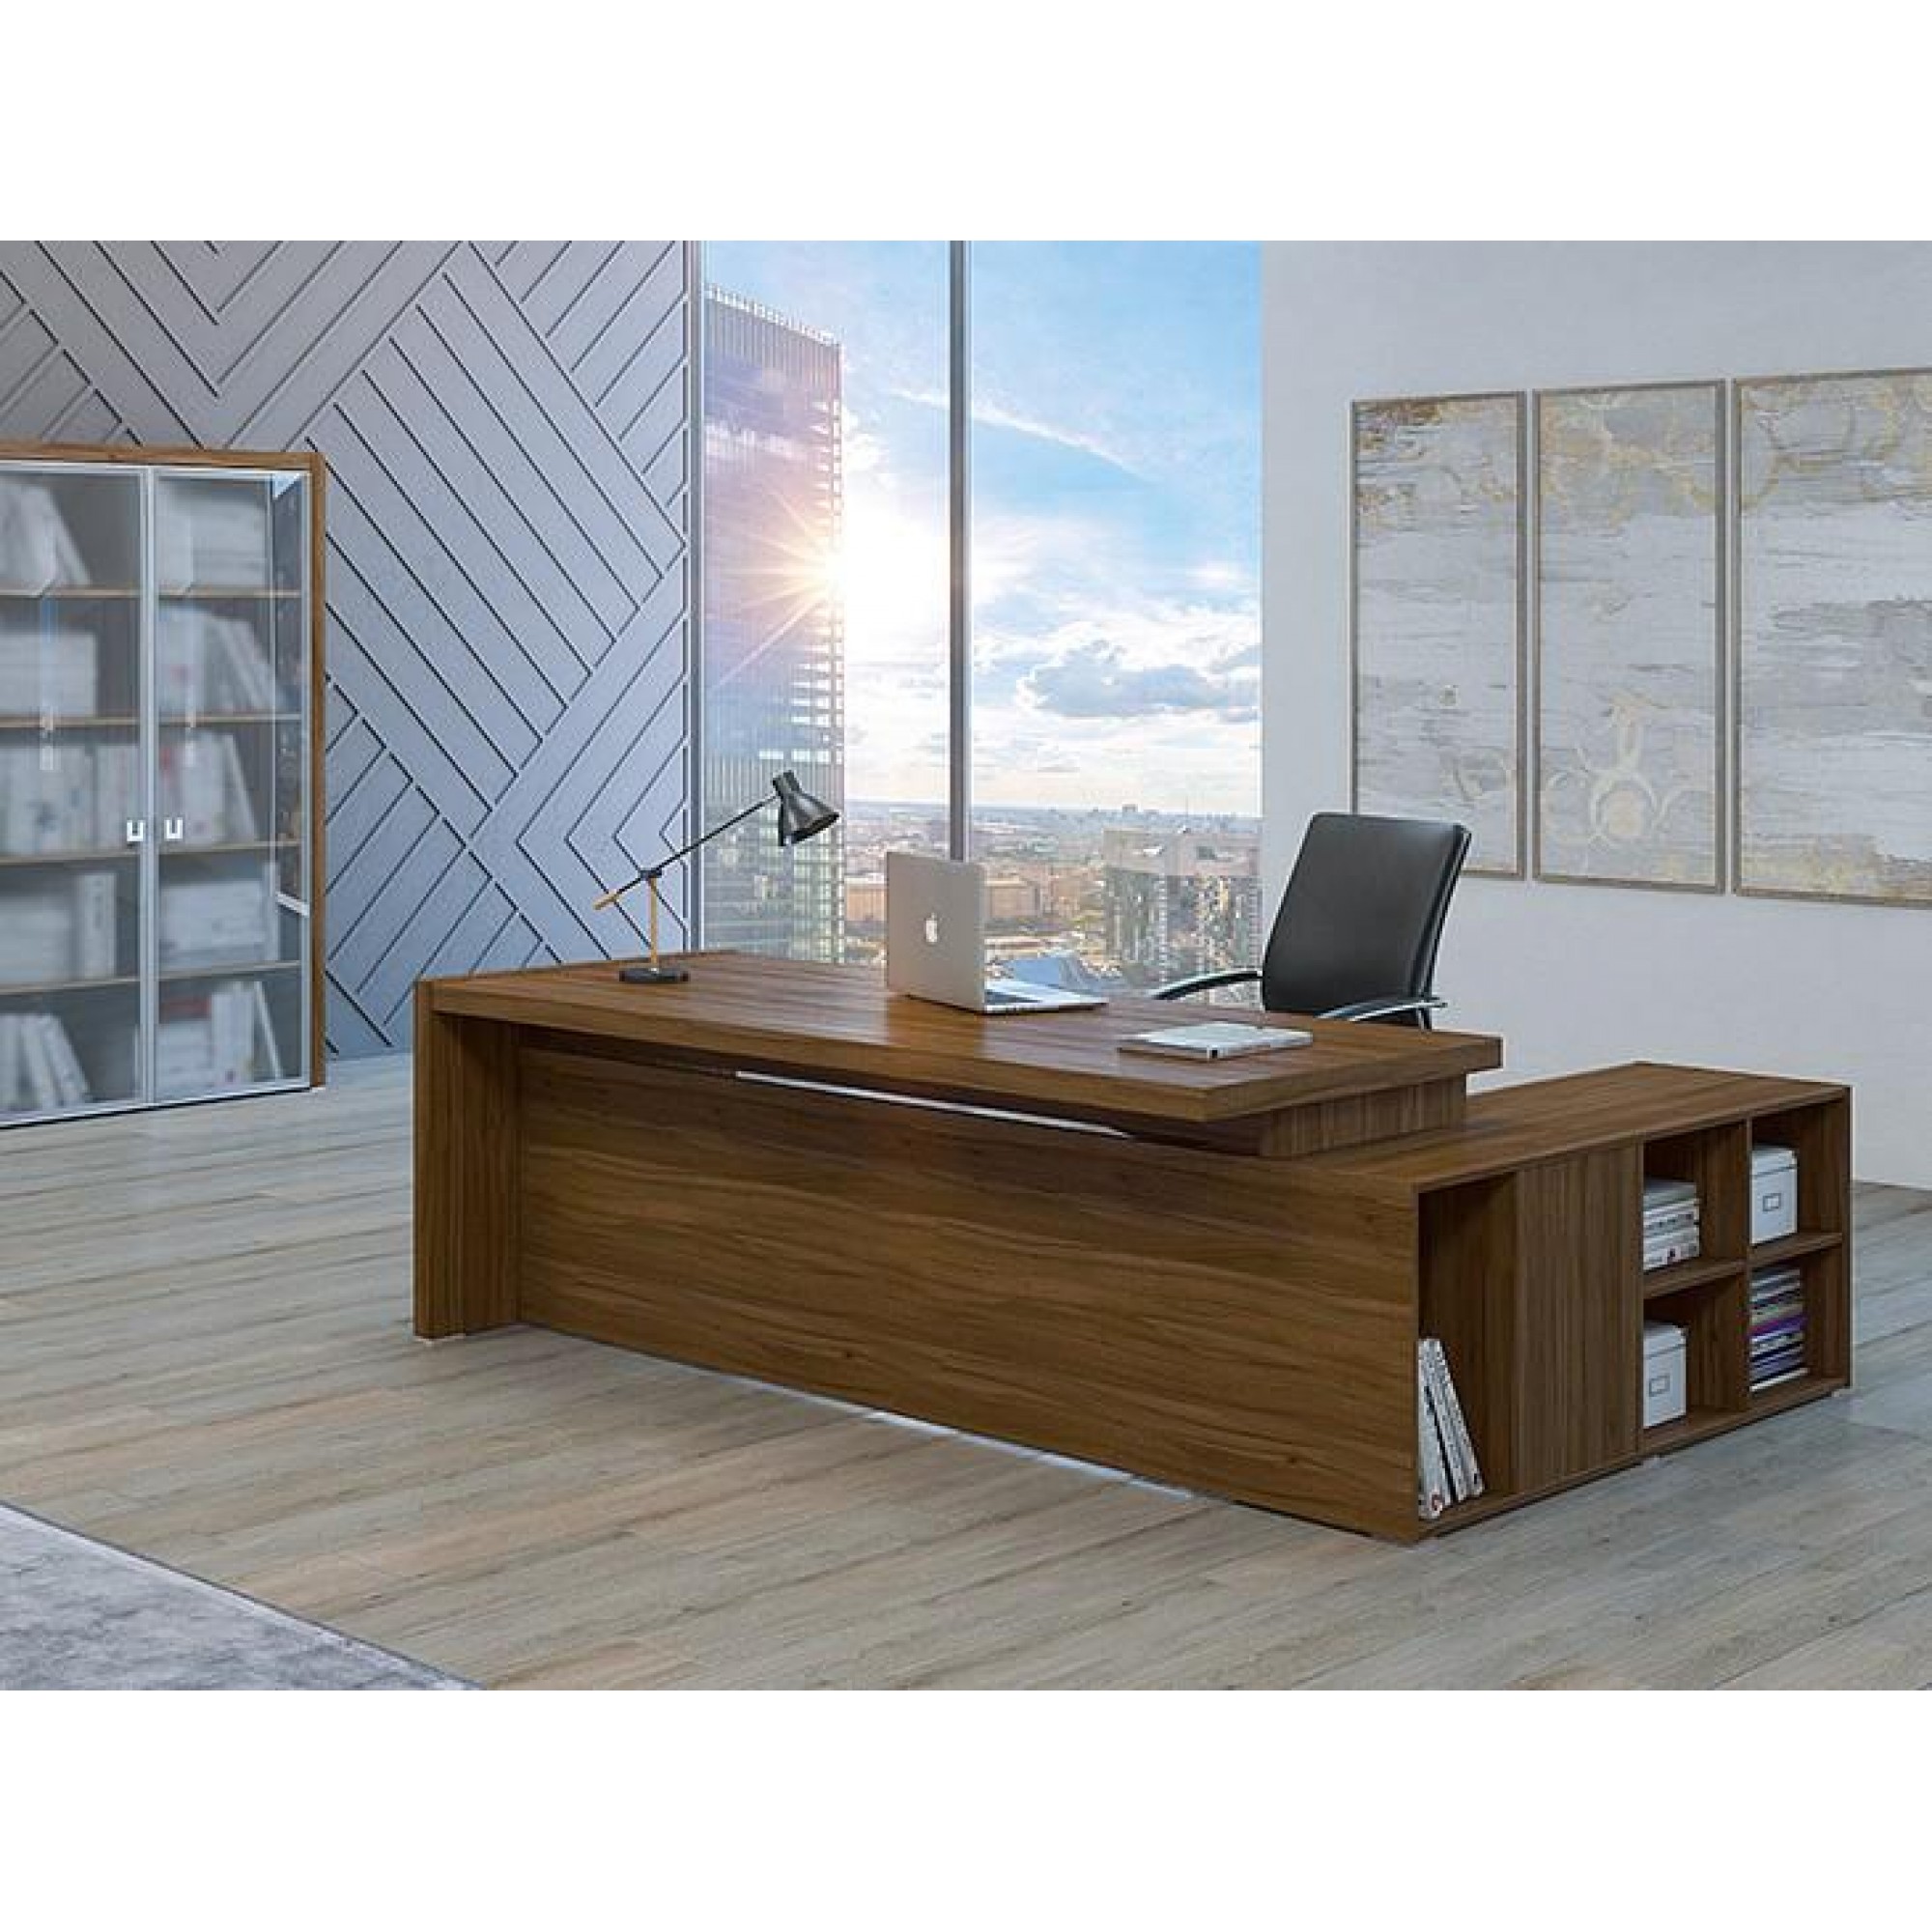 Стол для руководителя Solid древесина коричневая нейтральная орех 2230x1740x750(POI_SOL29711403)